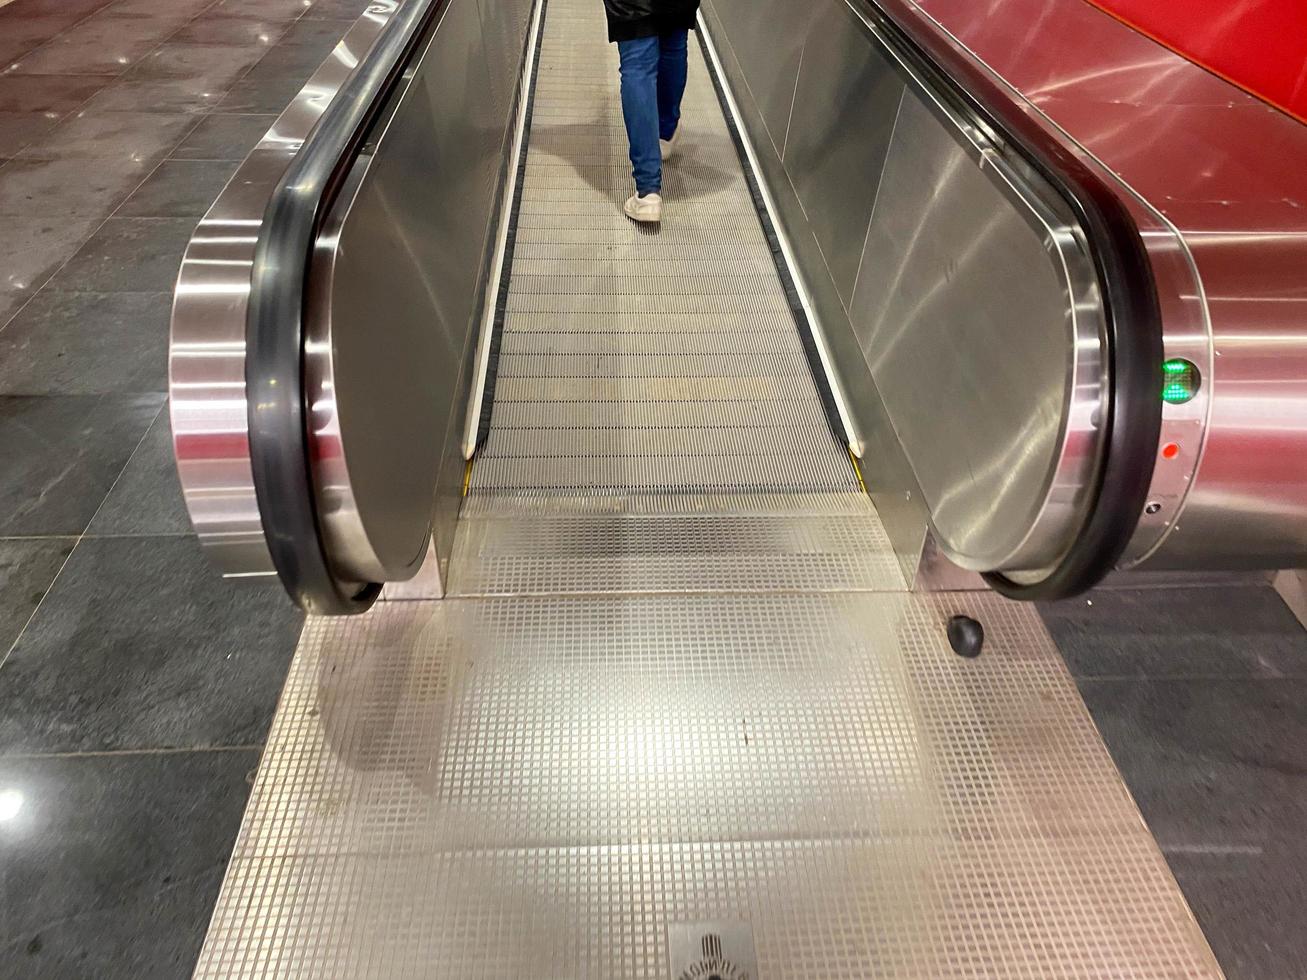 groot rood modern lang helder ondergronds loopbrug tussen metro stations met reizen wandelaars en roltrappen voor snel passage van passagiers foto